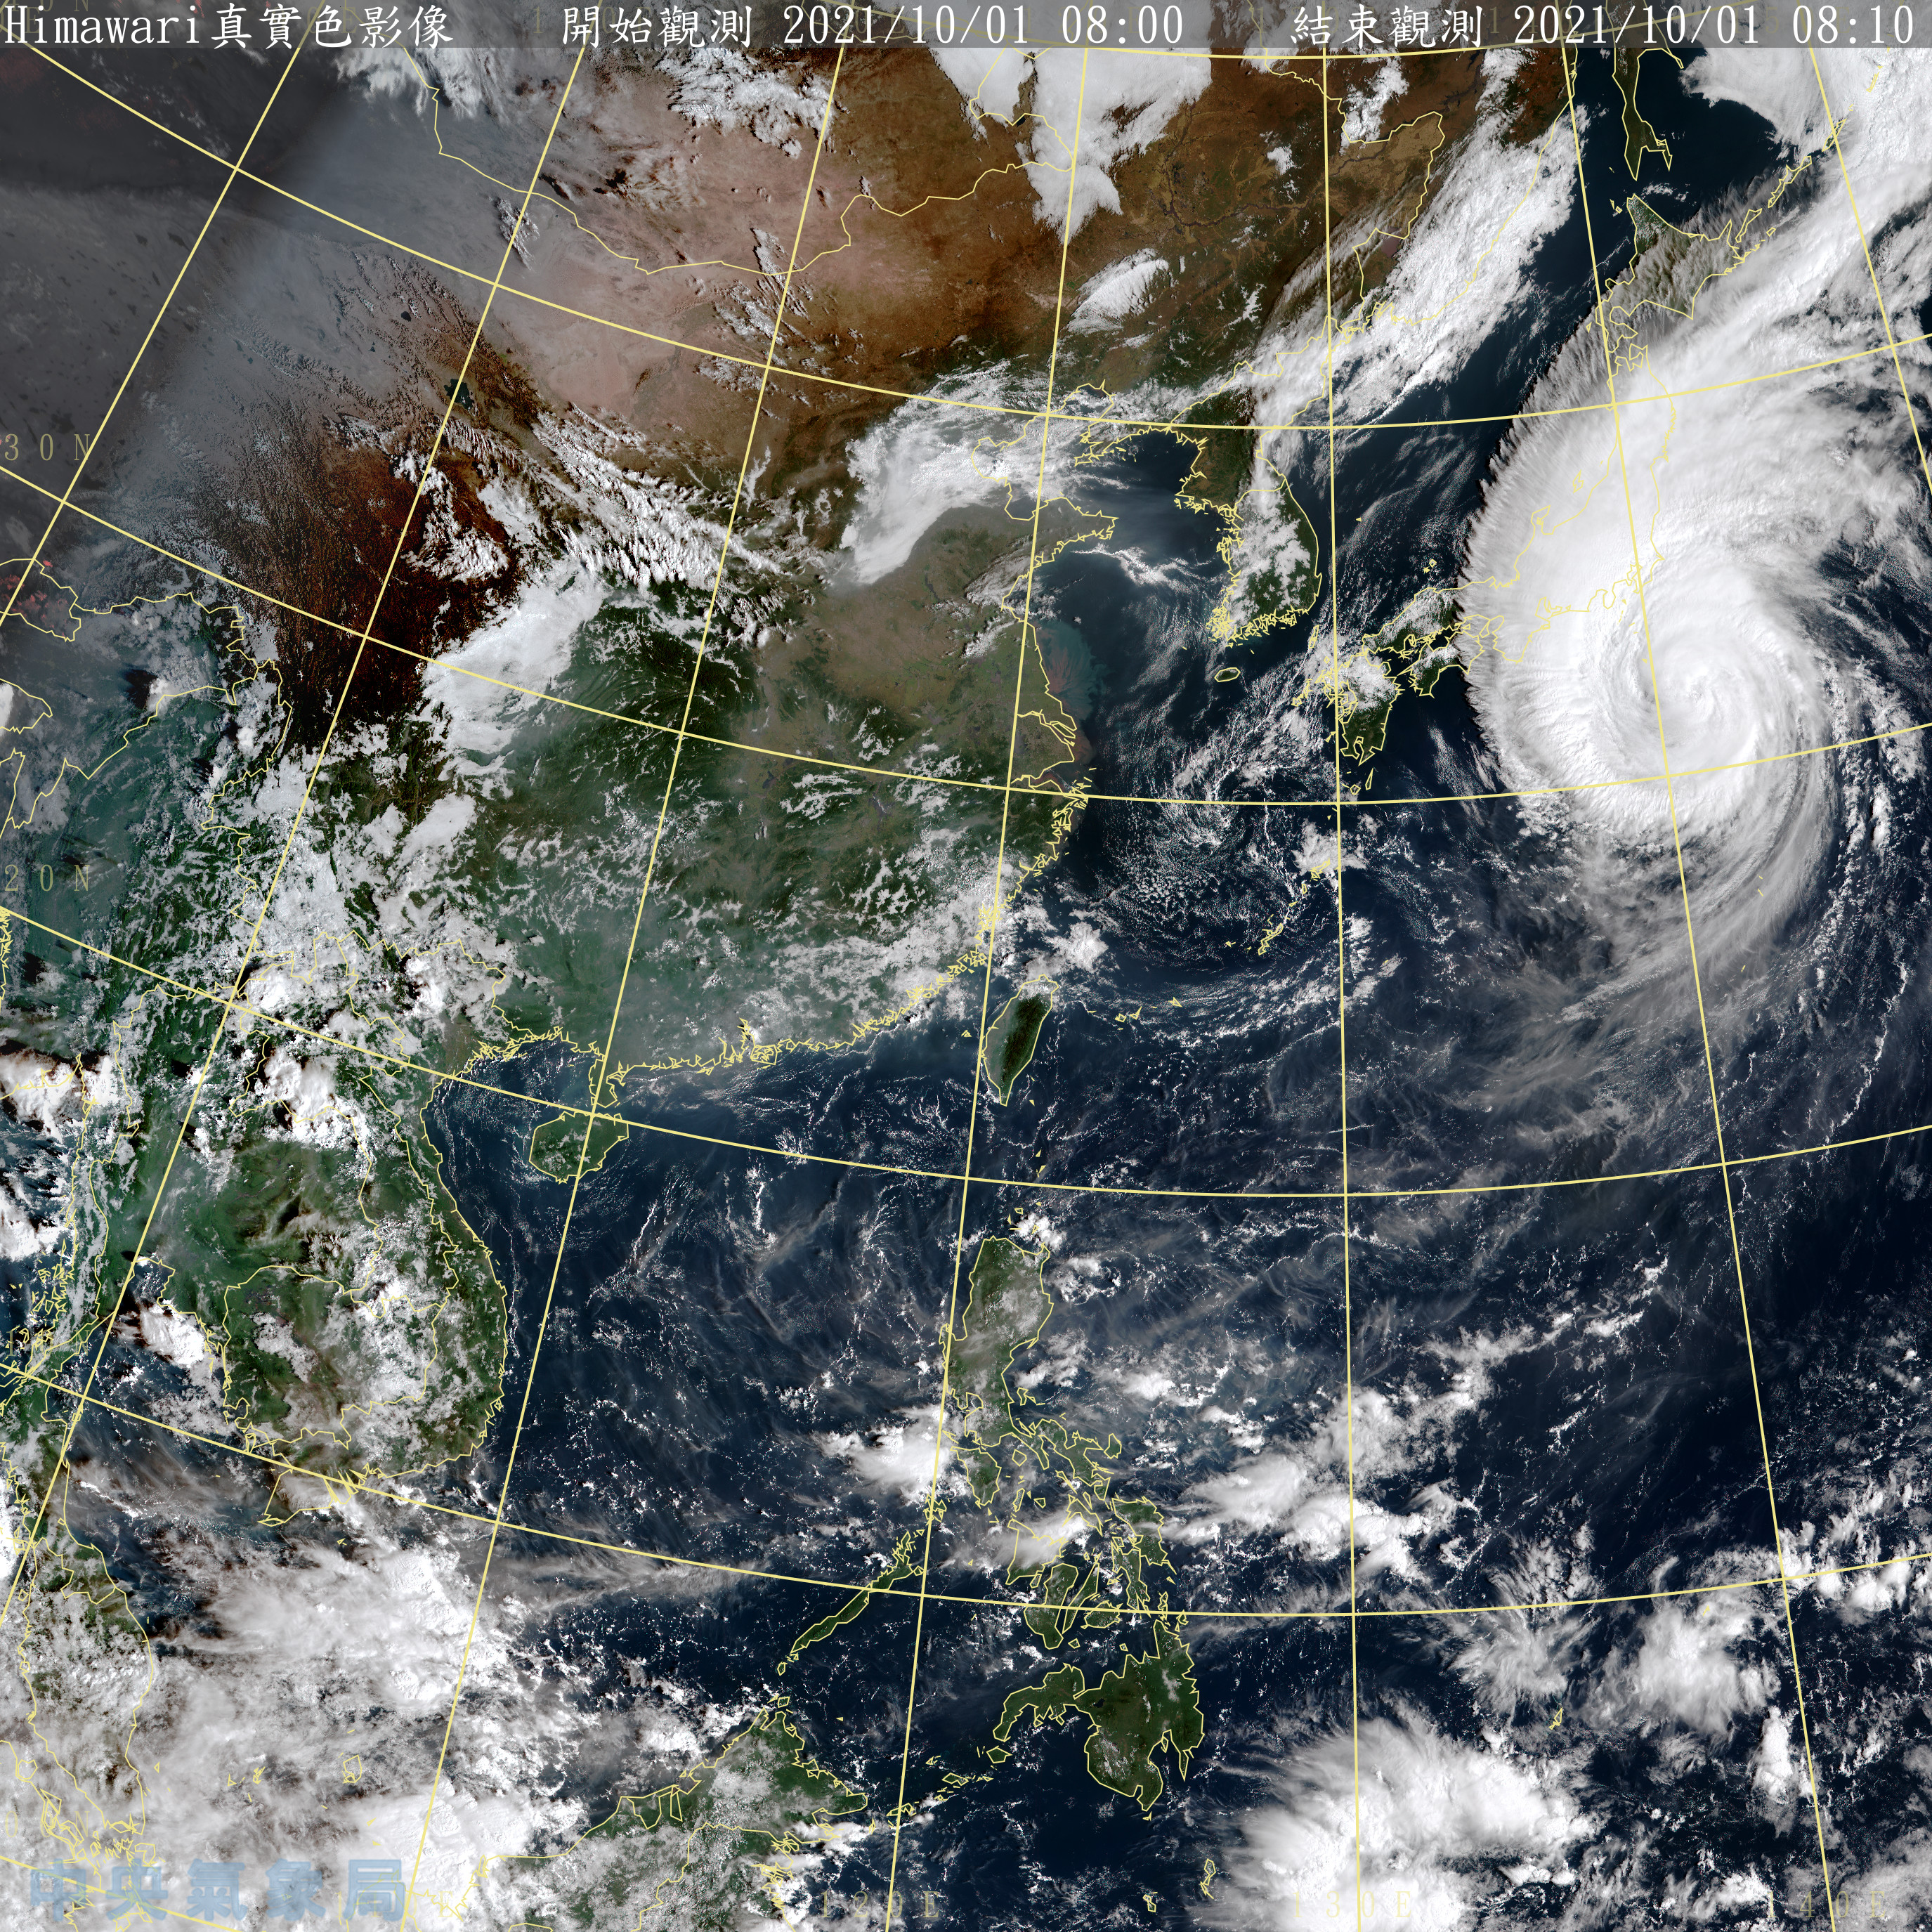 變天了！北部、東北部今迎大雨　「下週颱風生成」氣象專家點：就很精彩了